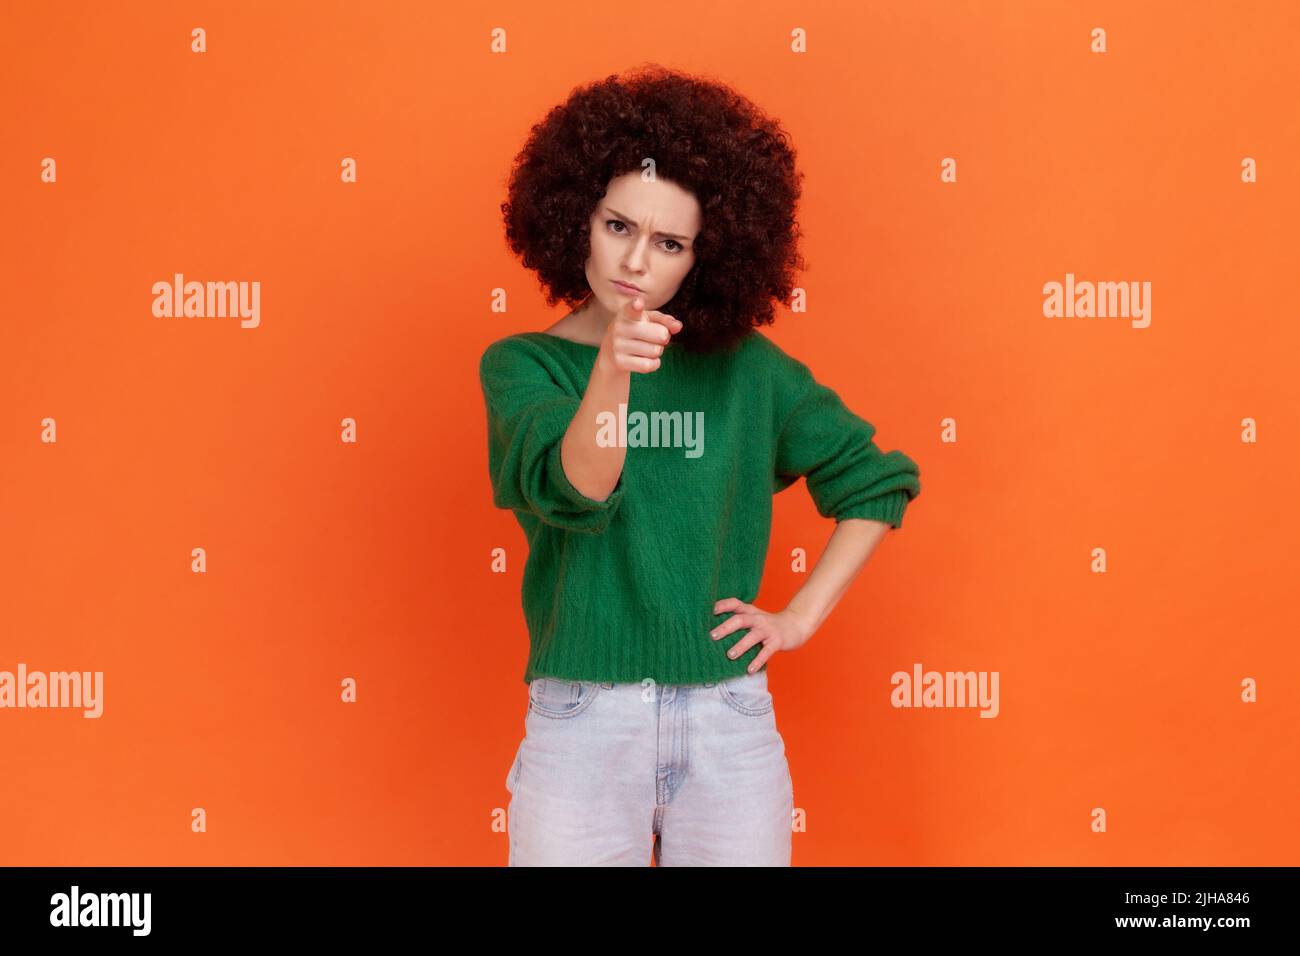 Porträt einer strengen Frau mit Afro-Frisur, die mit dem Zeigefinger auf die Kamera zeigt und einen ernsten ermahnenden Gesichtsausdruck hat. Innenaufnahme des Studios isoliert auf orangefarbenem Hintergrund. Stockfoto